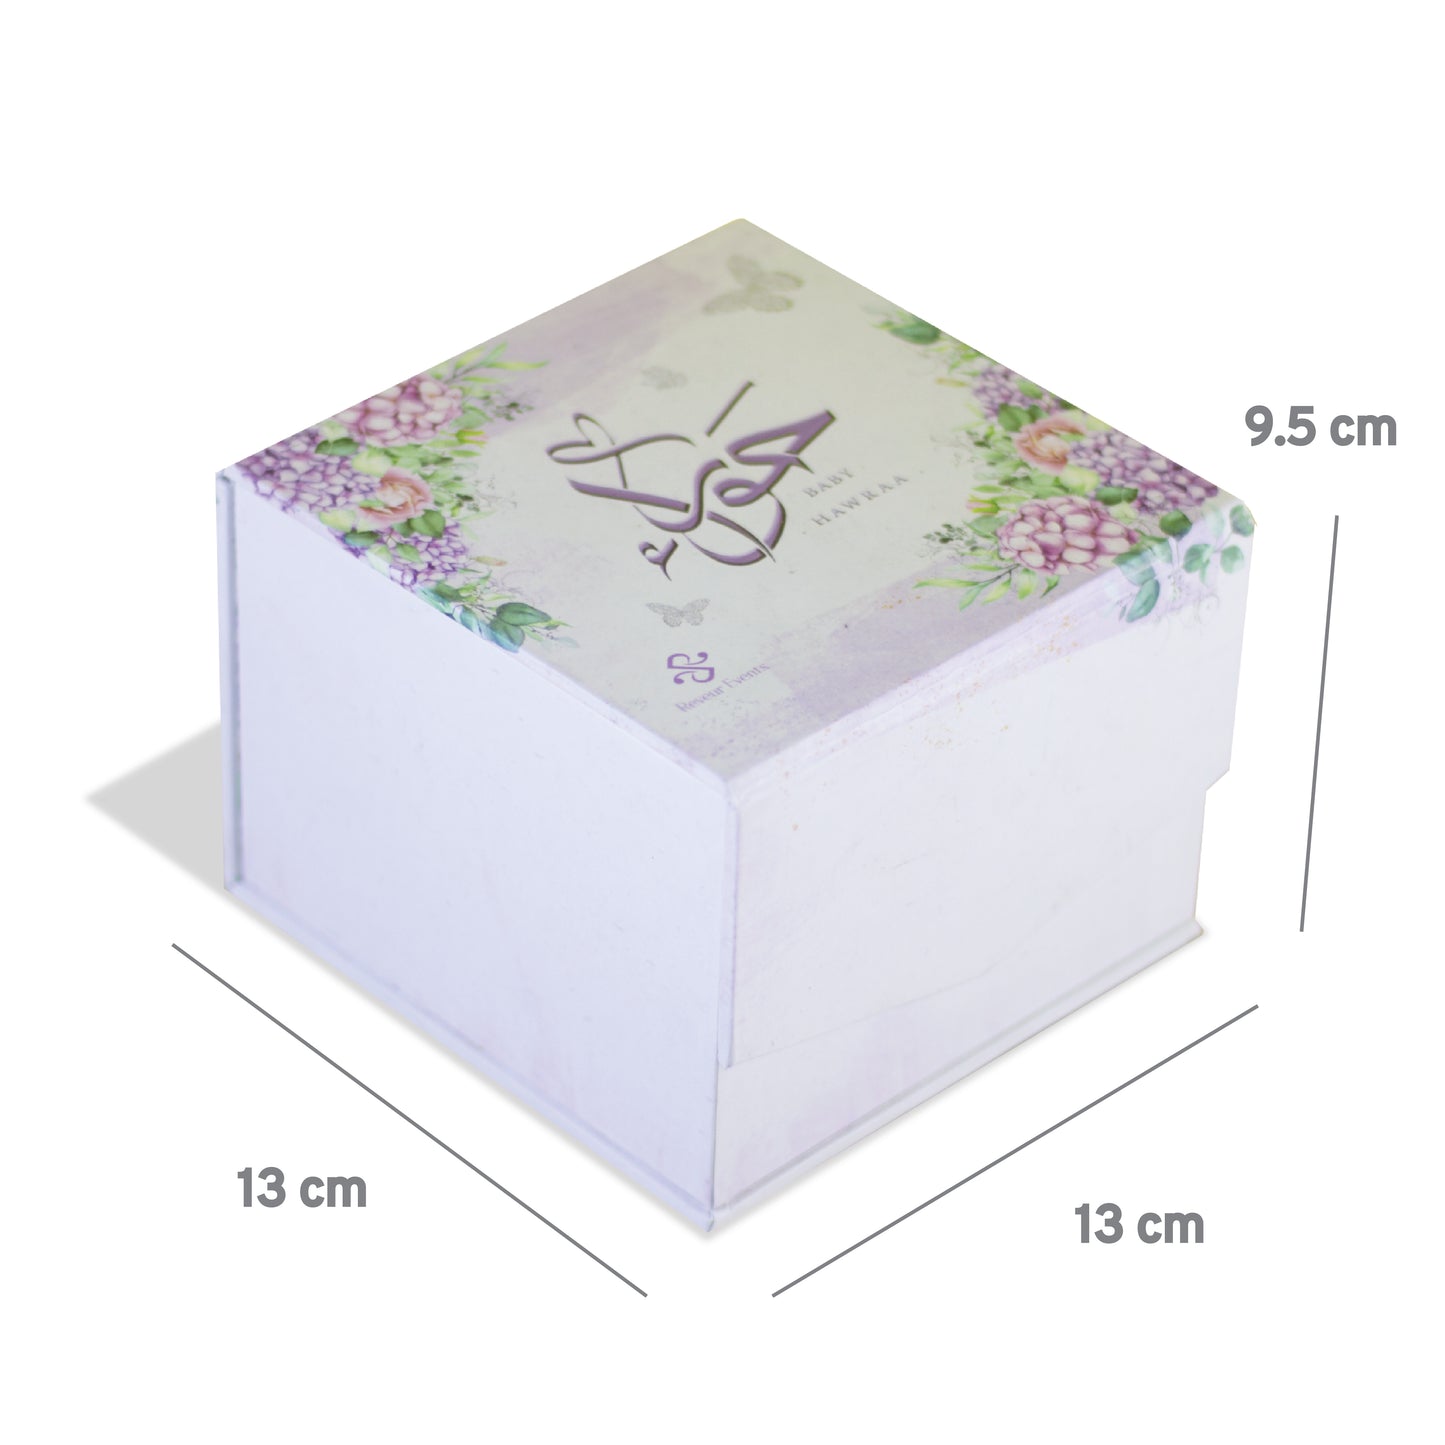 RIGID BOX 13x13x9.5 cm